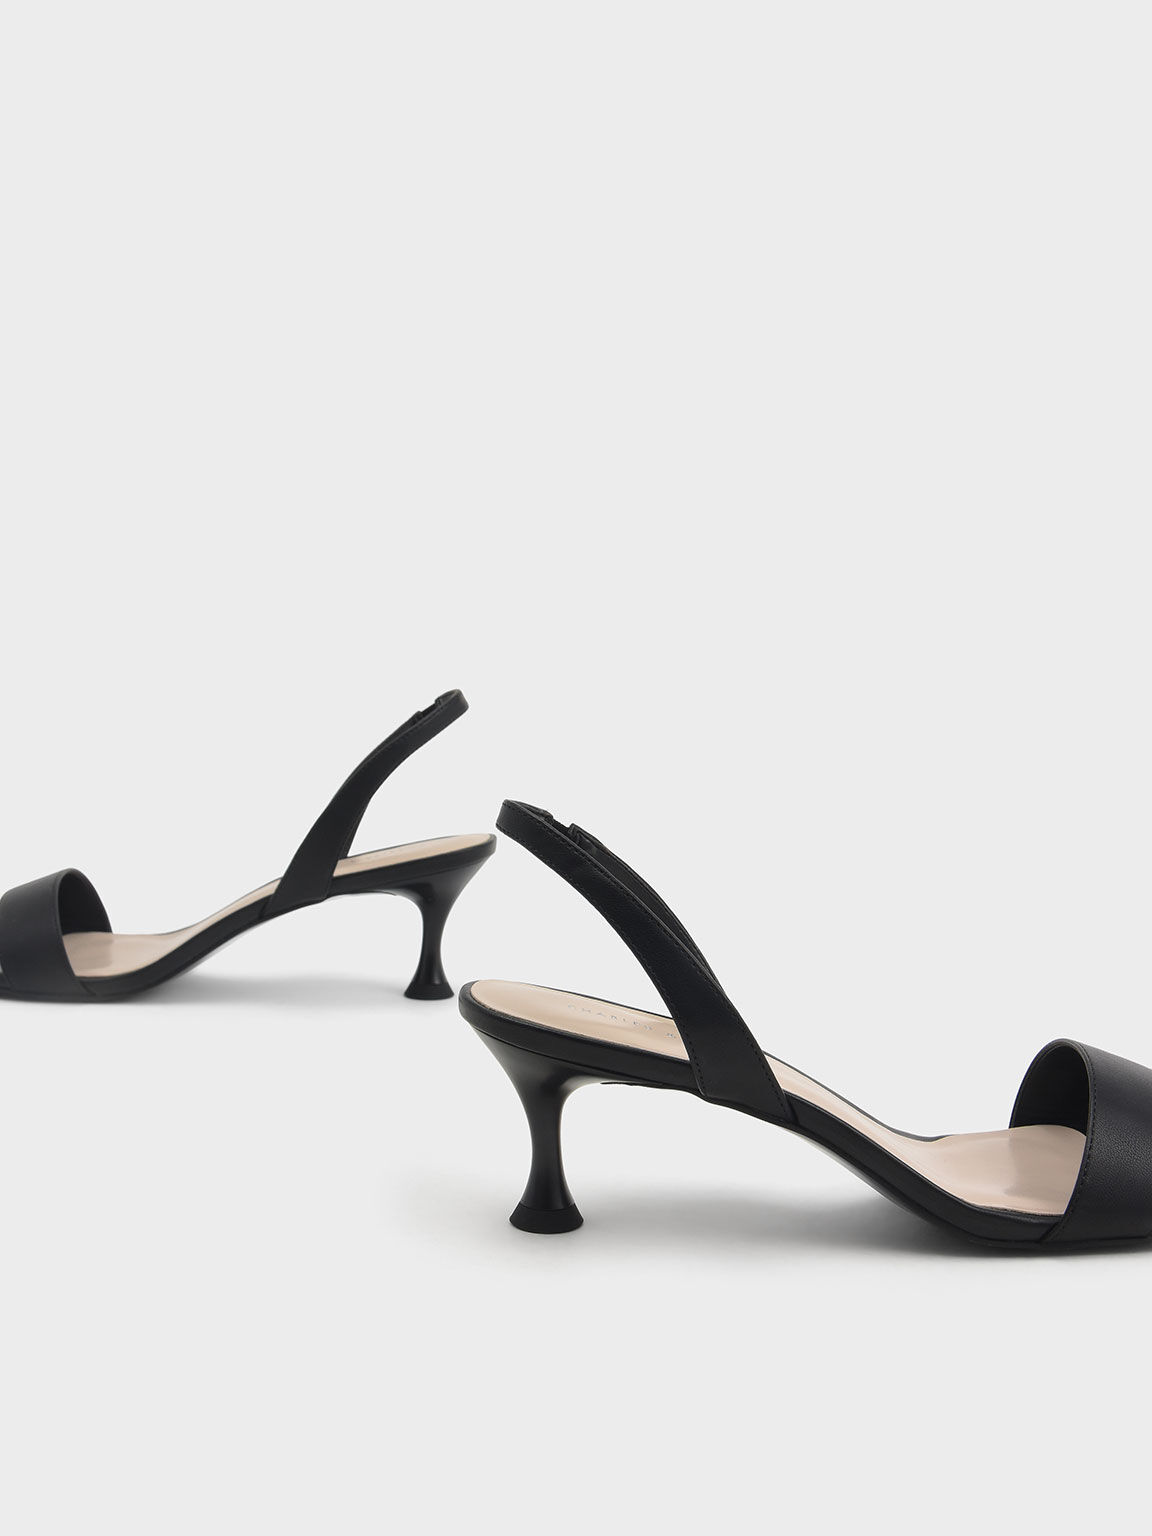 Sculptural Heel Slingback Sandals, Black, hi-res